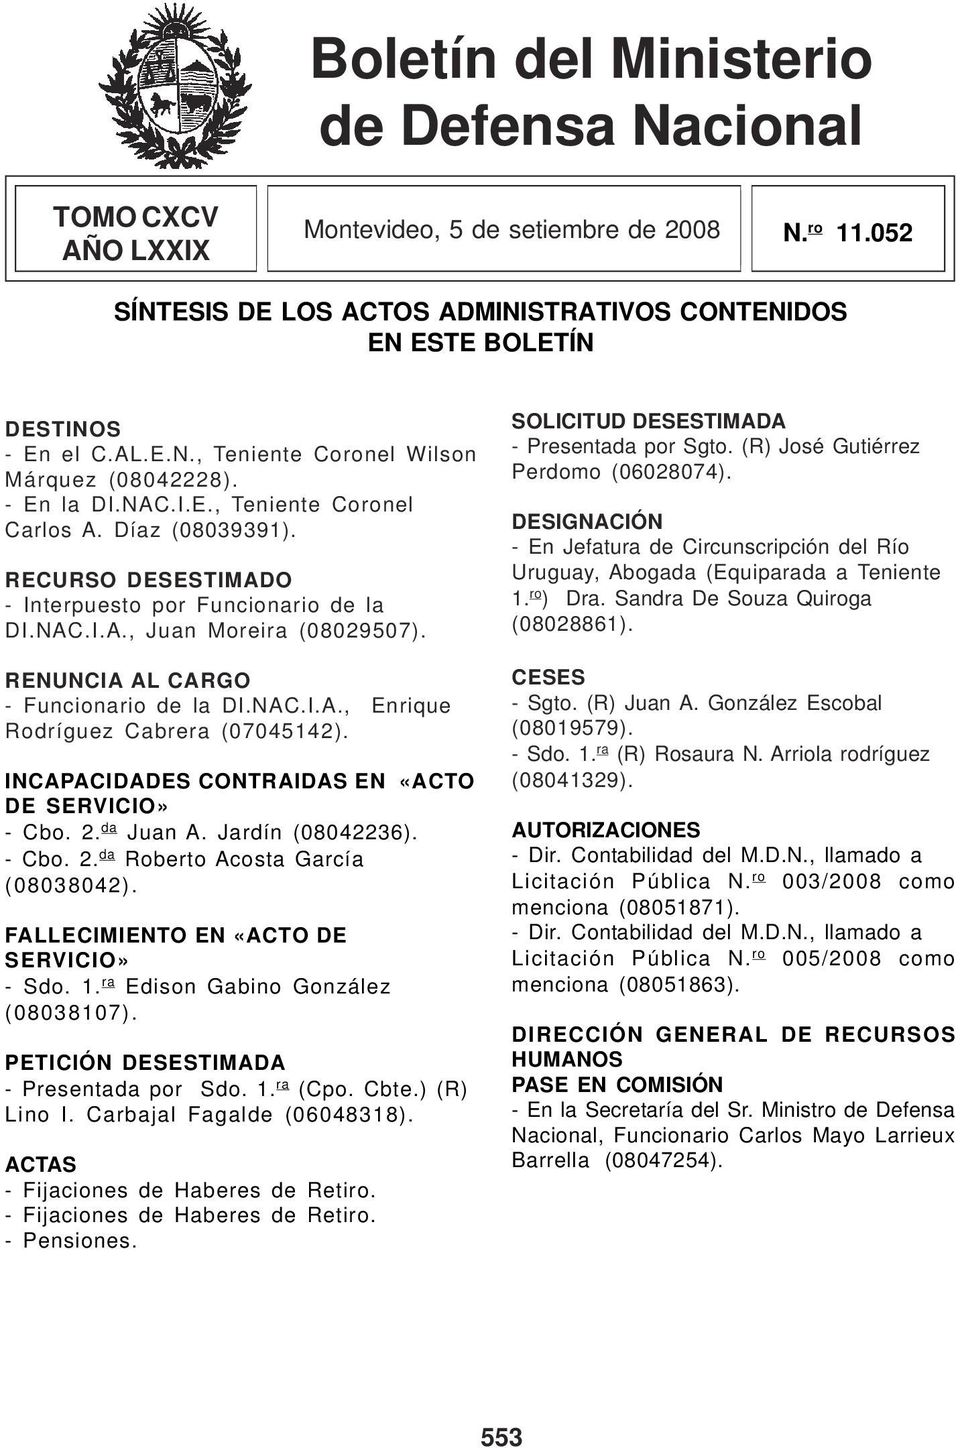 NAC.I.A., Enrique Rodríguez Cabrera (07045142). INCAPACIDADES CONTRAIDAS EN «ACTO DE SERVICIO» - Cbo. 2. da Juan A. Jardín (08042236). - Cbo. 2. da Roberto Acosta García (08038042).